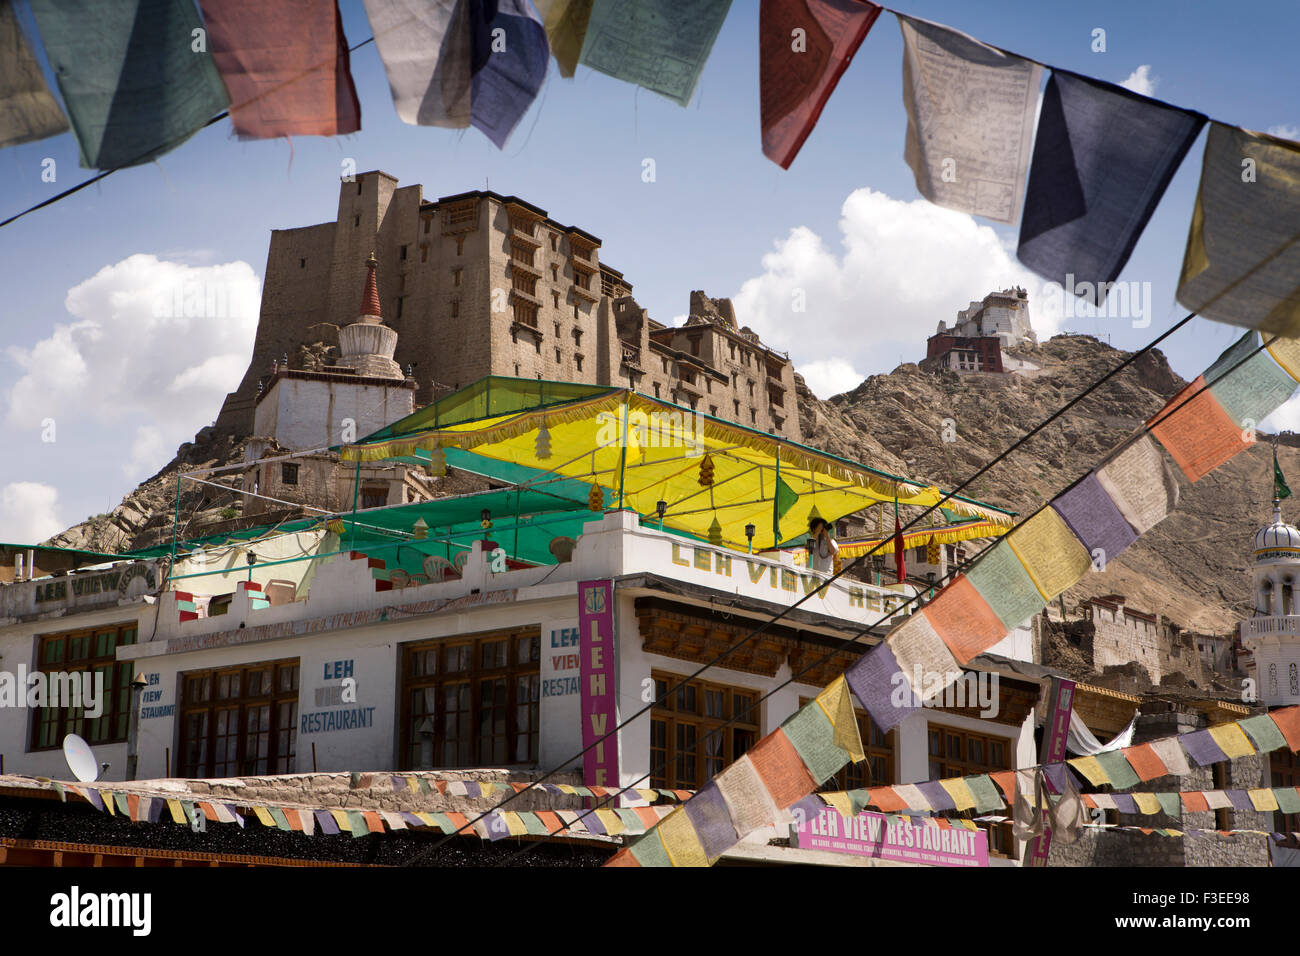 Indien, Jammu & Kashmir, Ladakh, Leh, Main Bazaar, Altstadtpalast gesehen durch buddhistische Gebetsfahnen Stockfoto